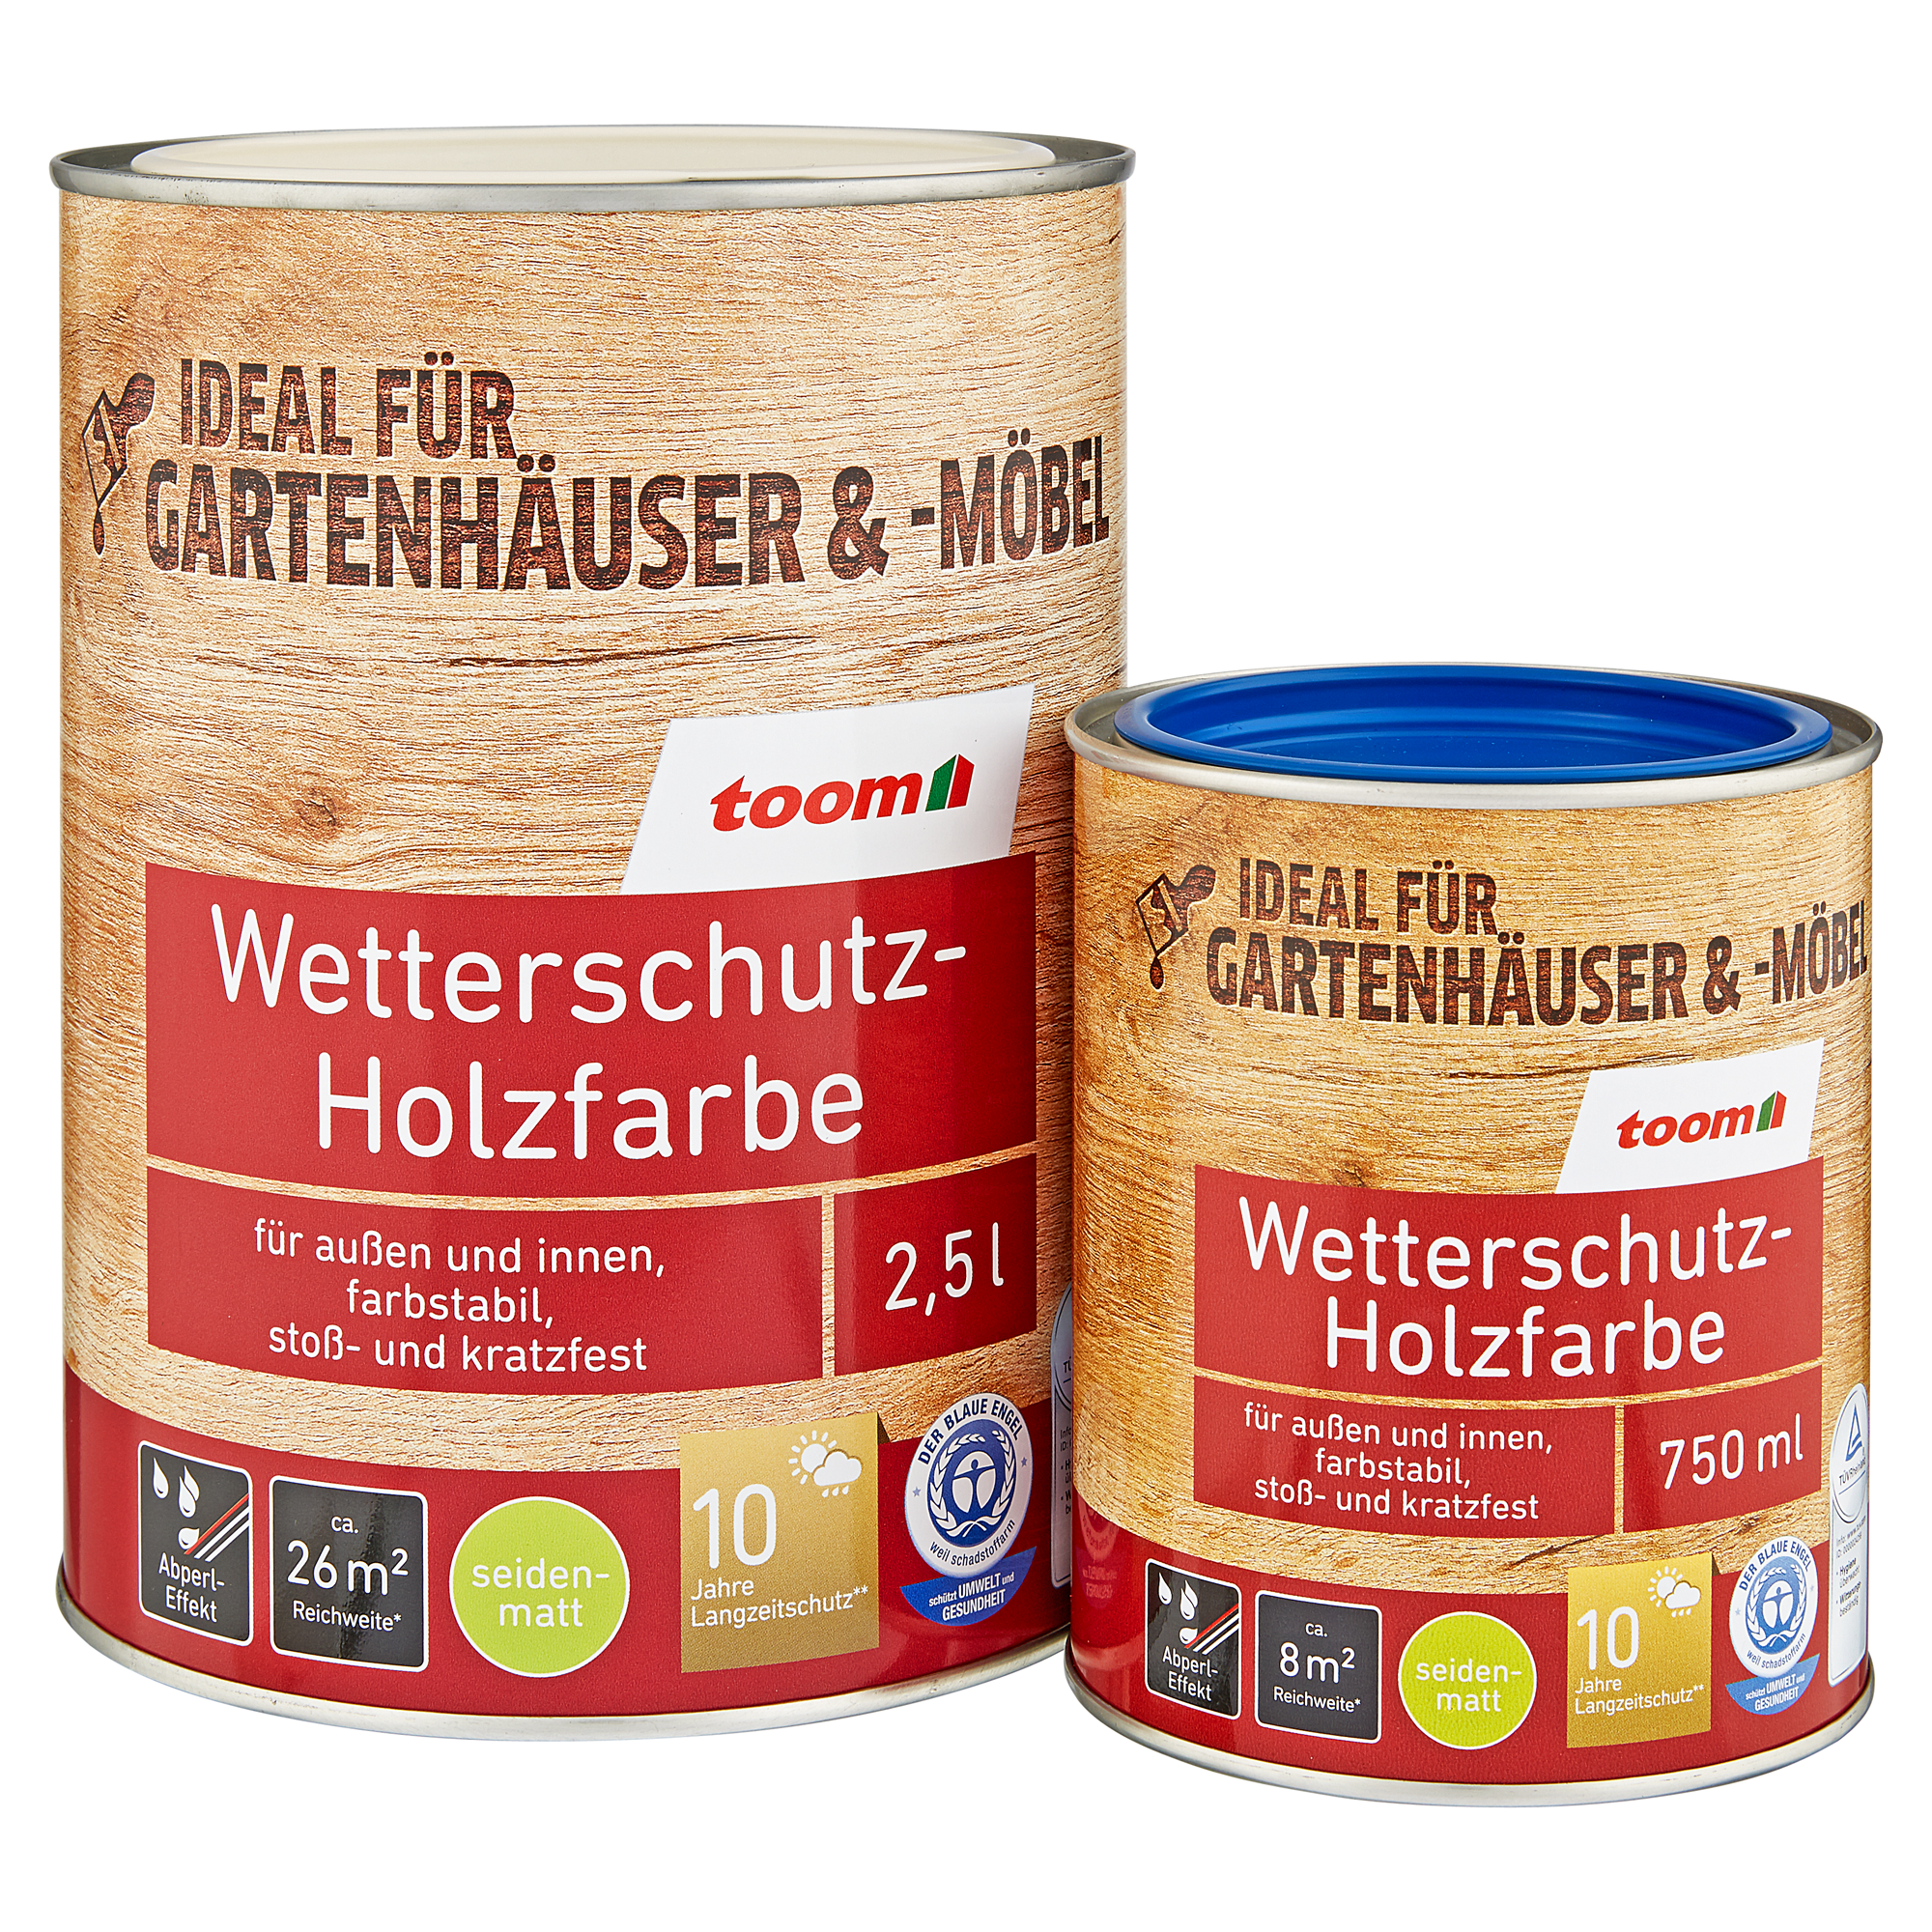 Wetterschutz-Holzfarbe enzianblau 2,5 l + product picture